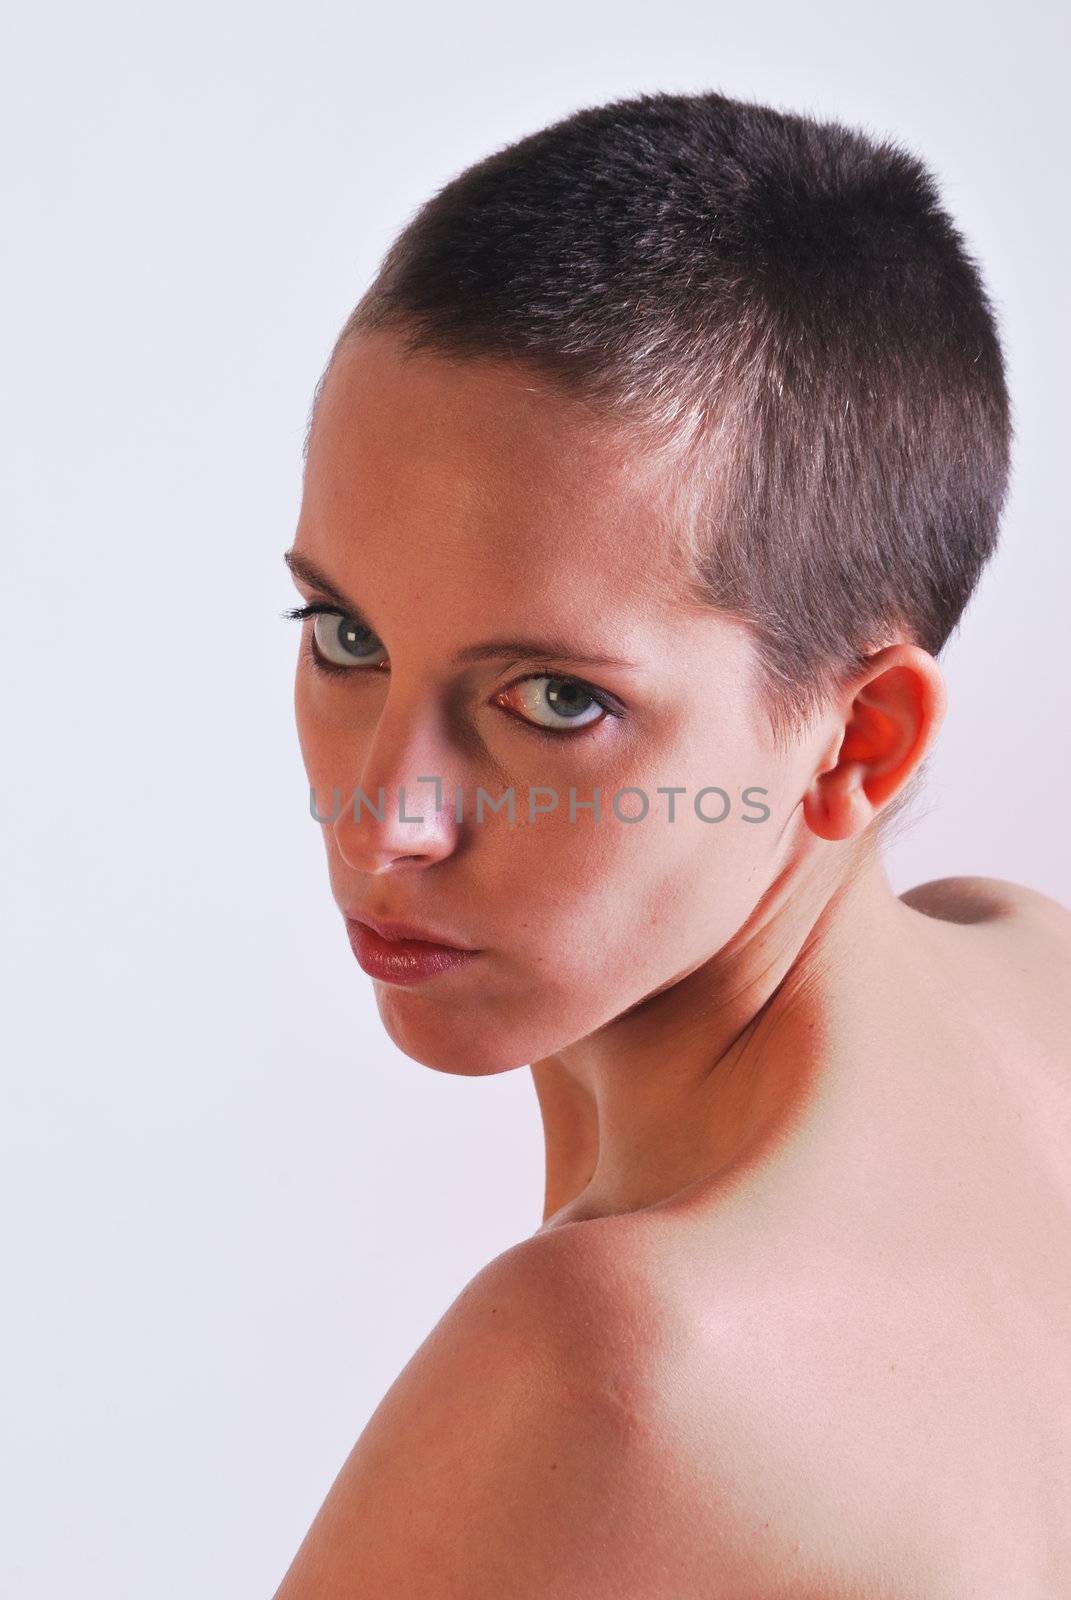 Woman with short hair facing camera